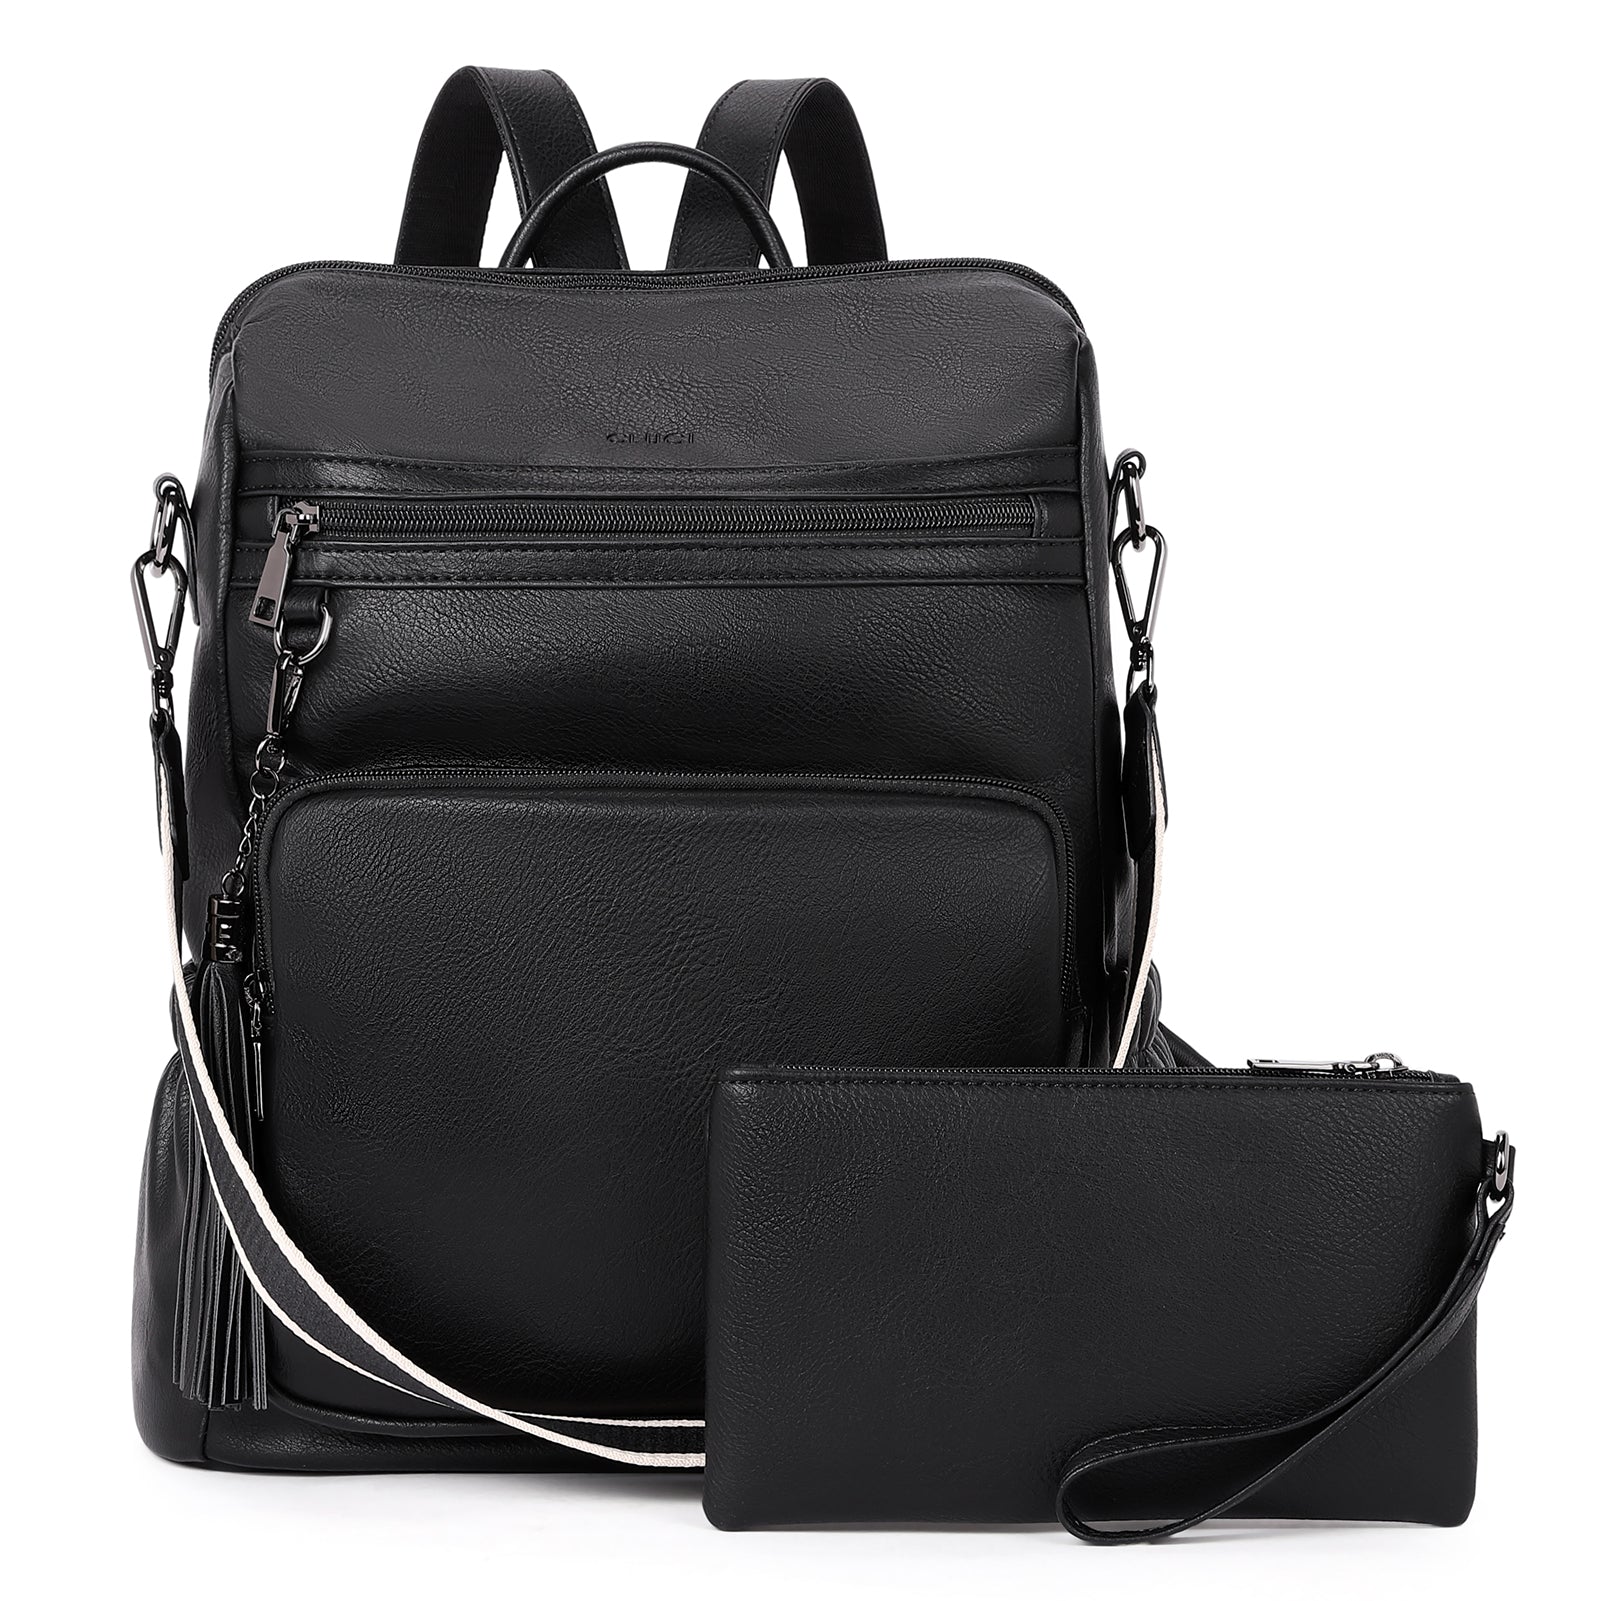 Designer Travel Bags